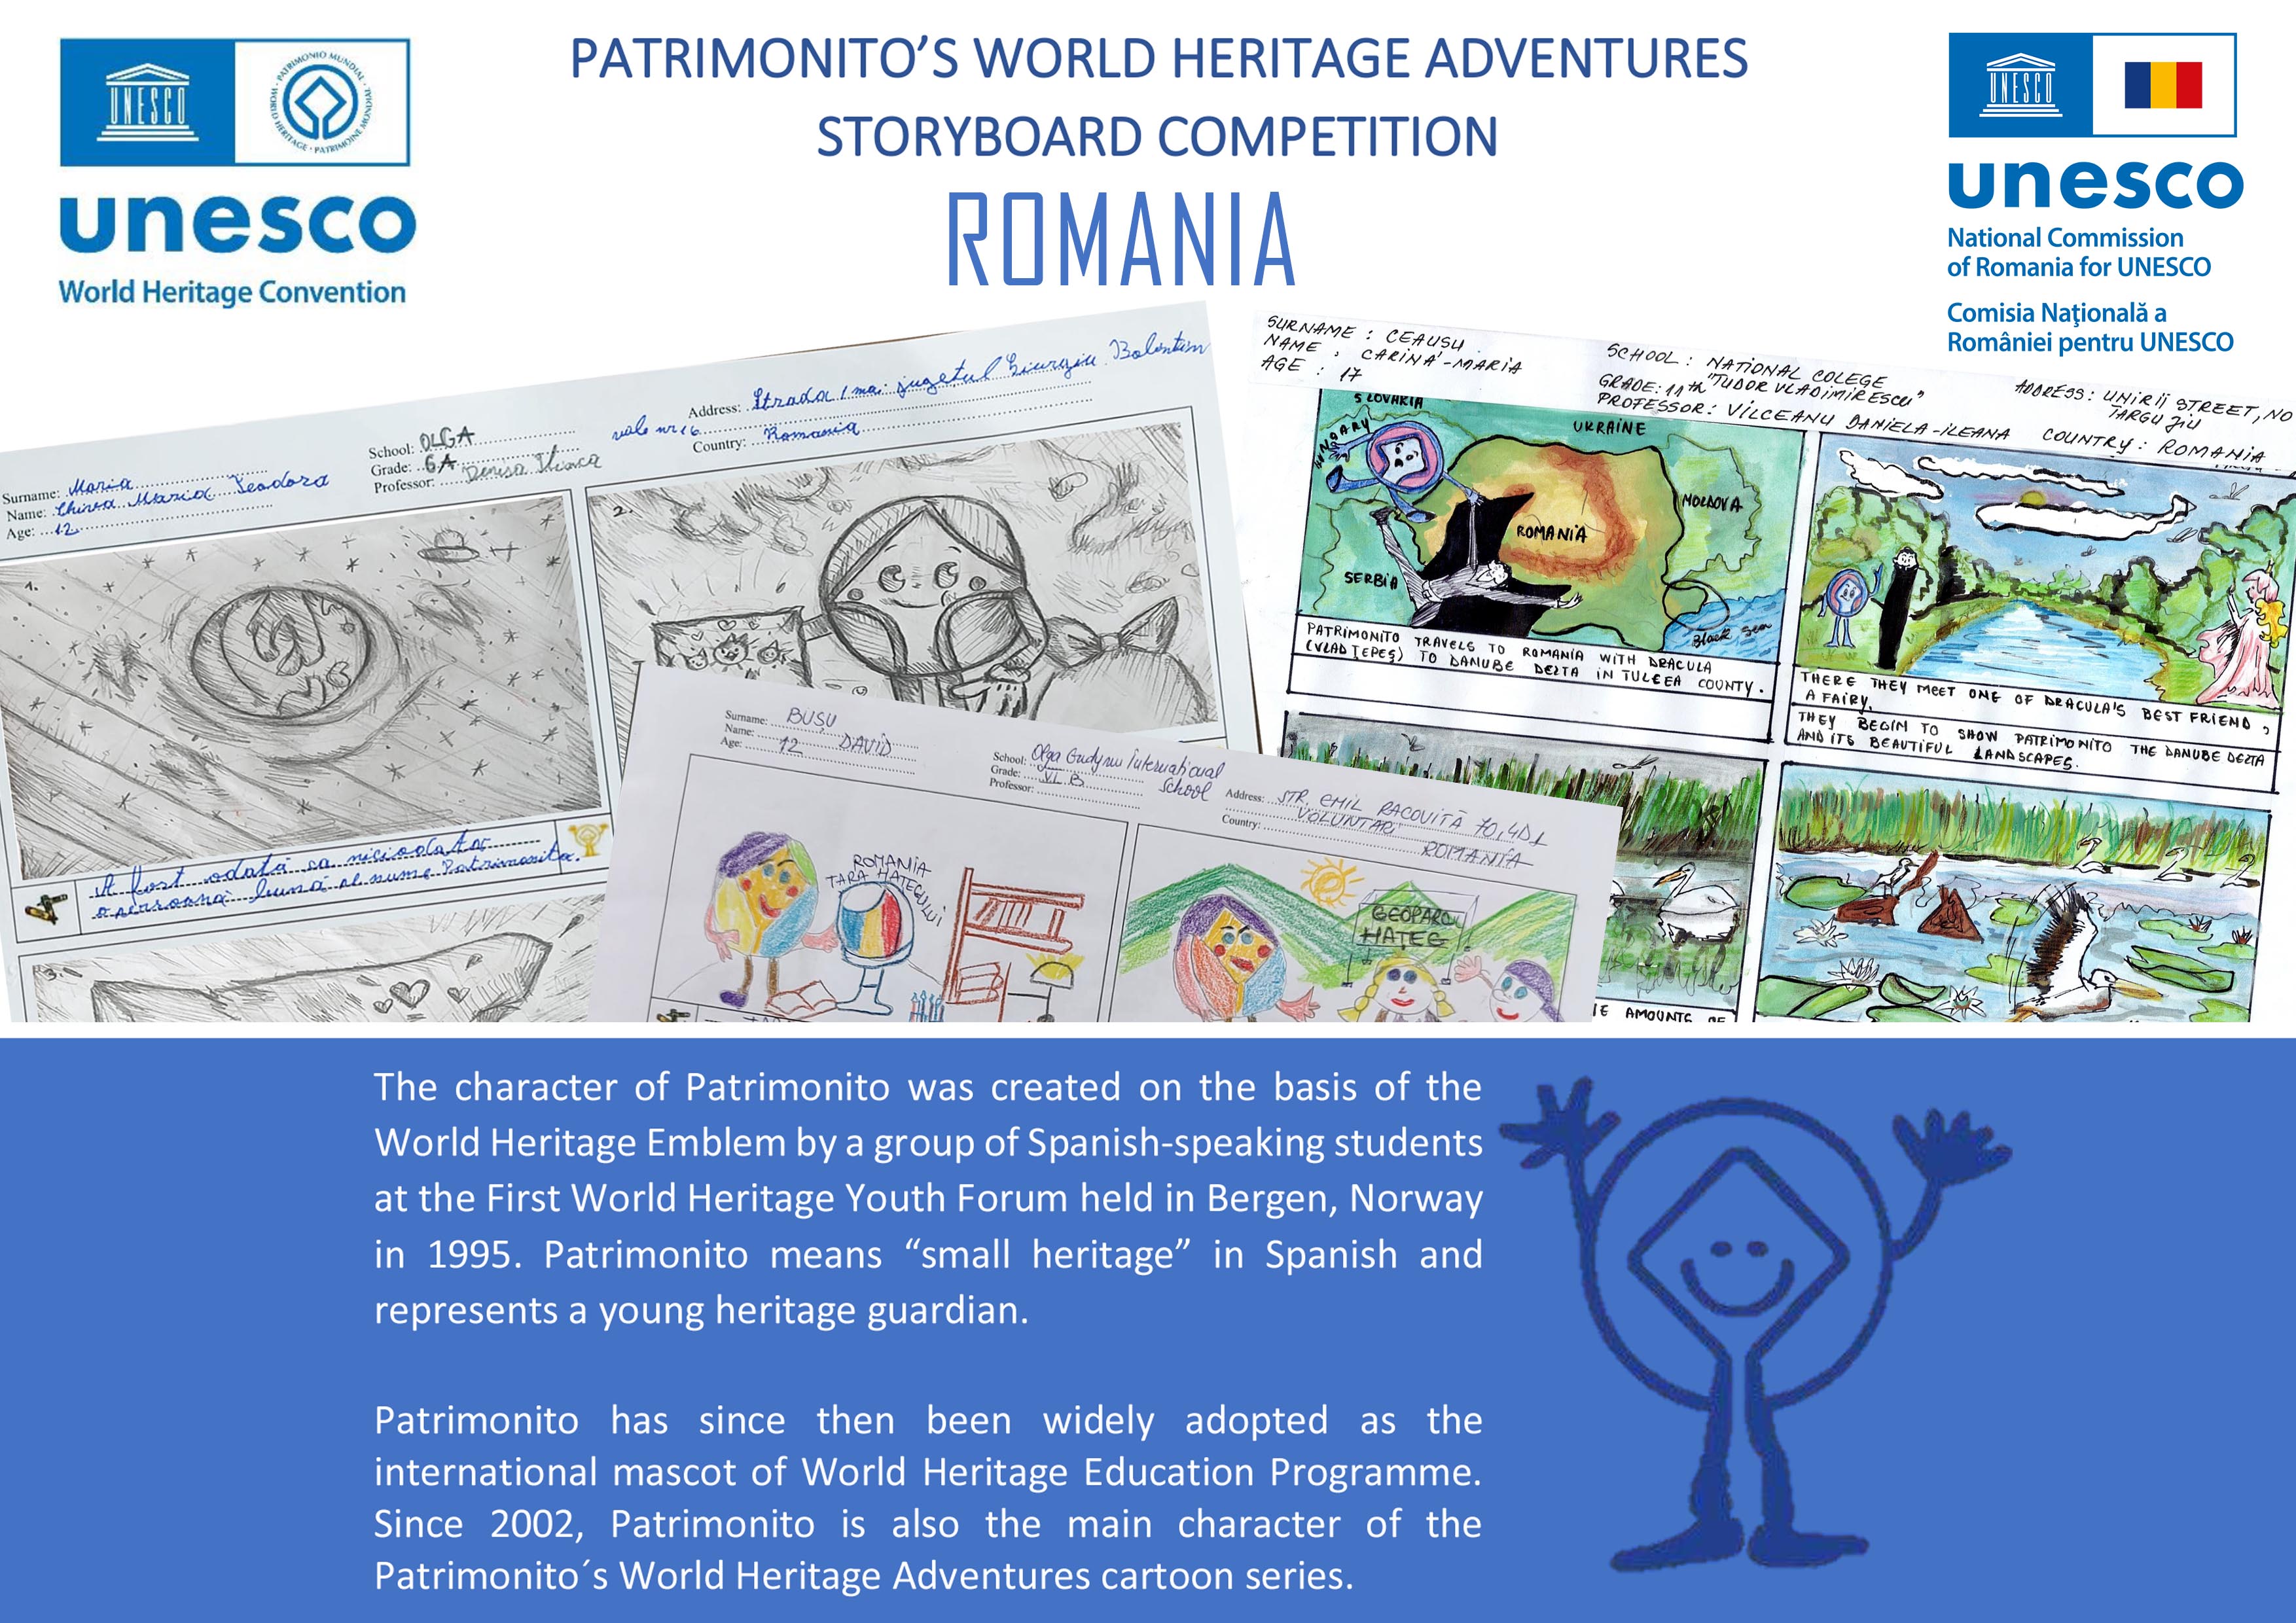 Elevi ai Școlilor ASPnet  din România  participanți la Concursul  Internațional UNESCO  de storyboard ”Patrimonito 2022”